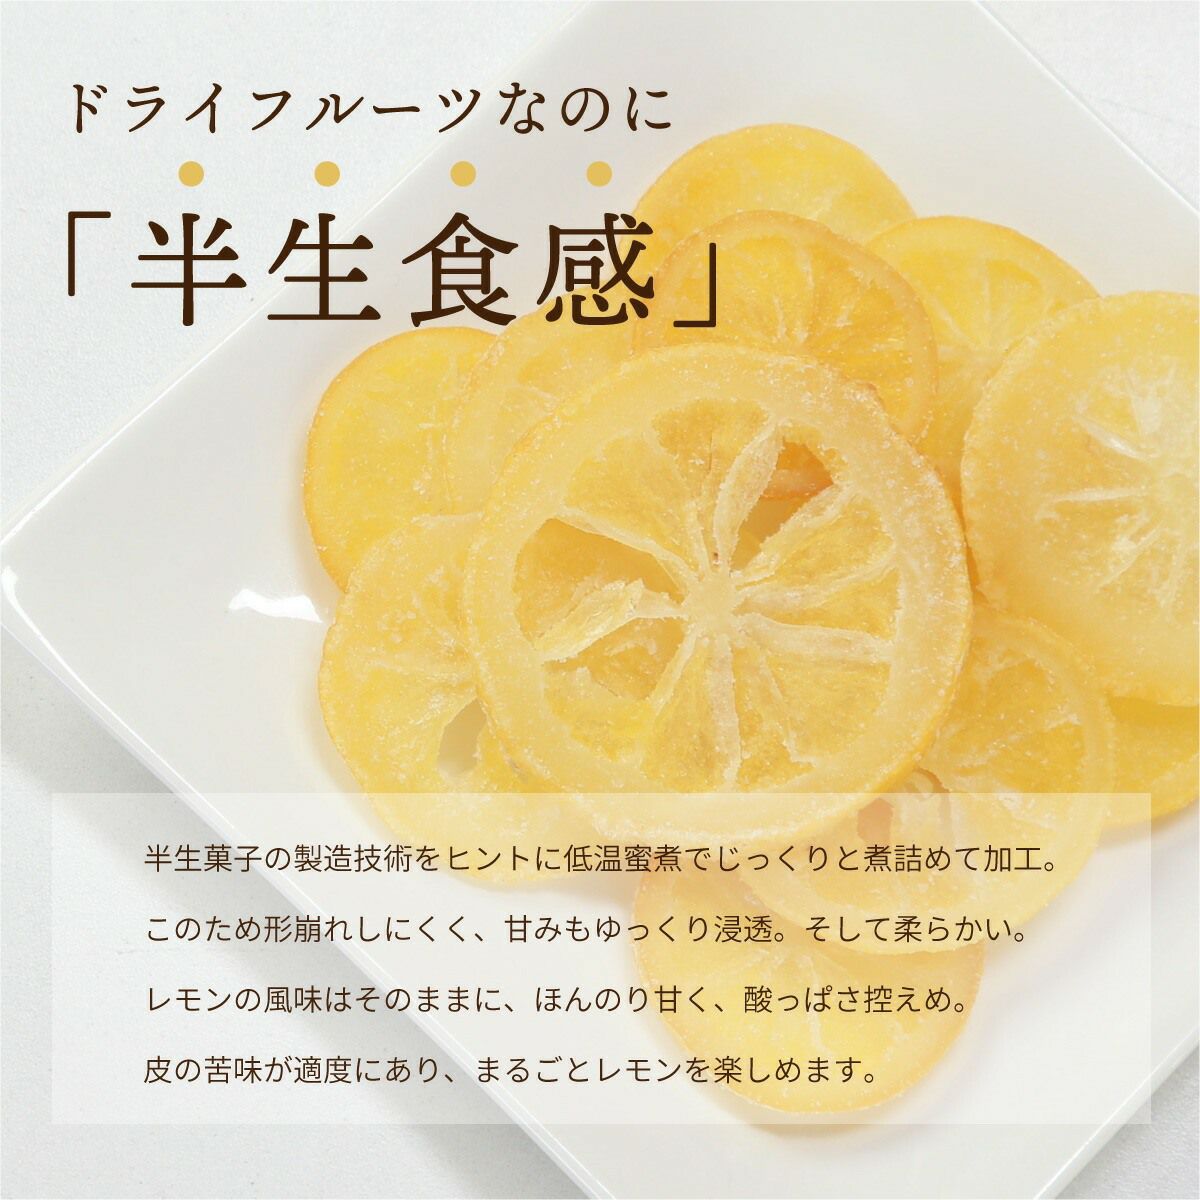 ドライフルーツ 国産 輪切り レモン 500g 特長3